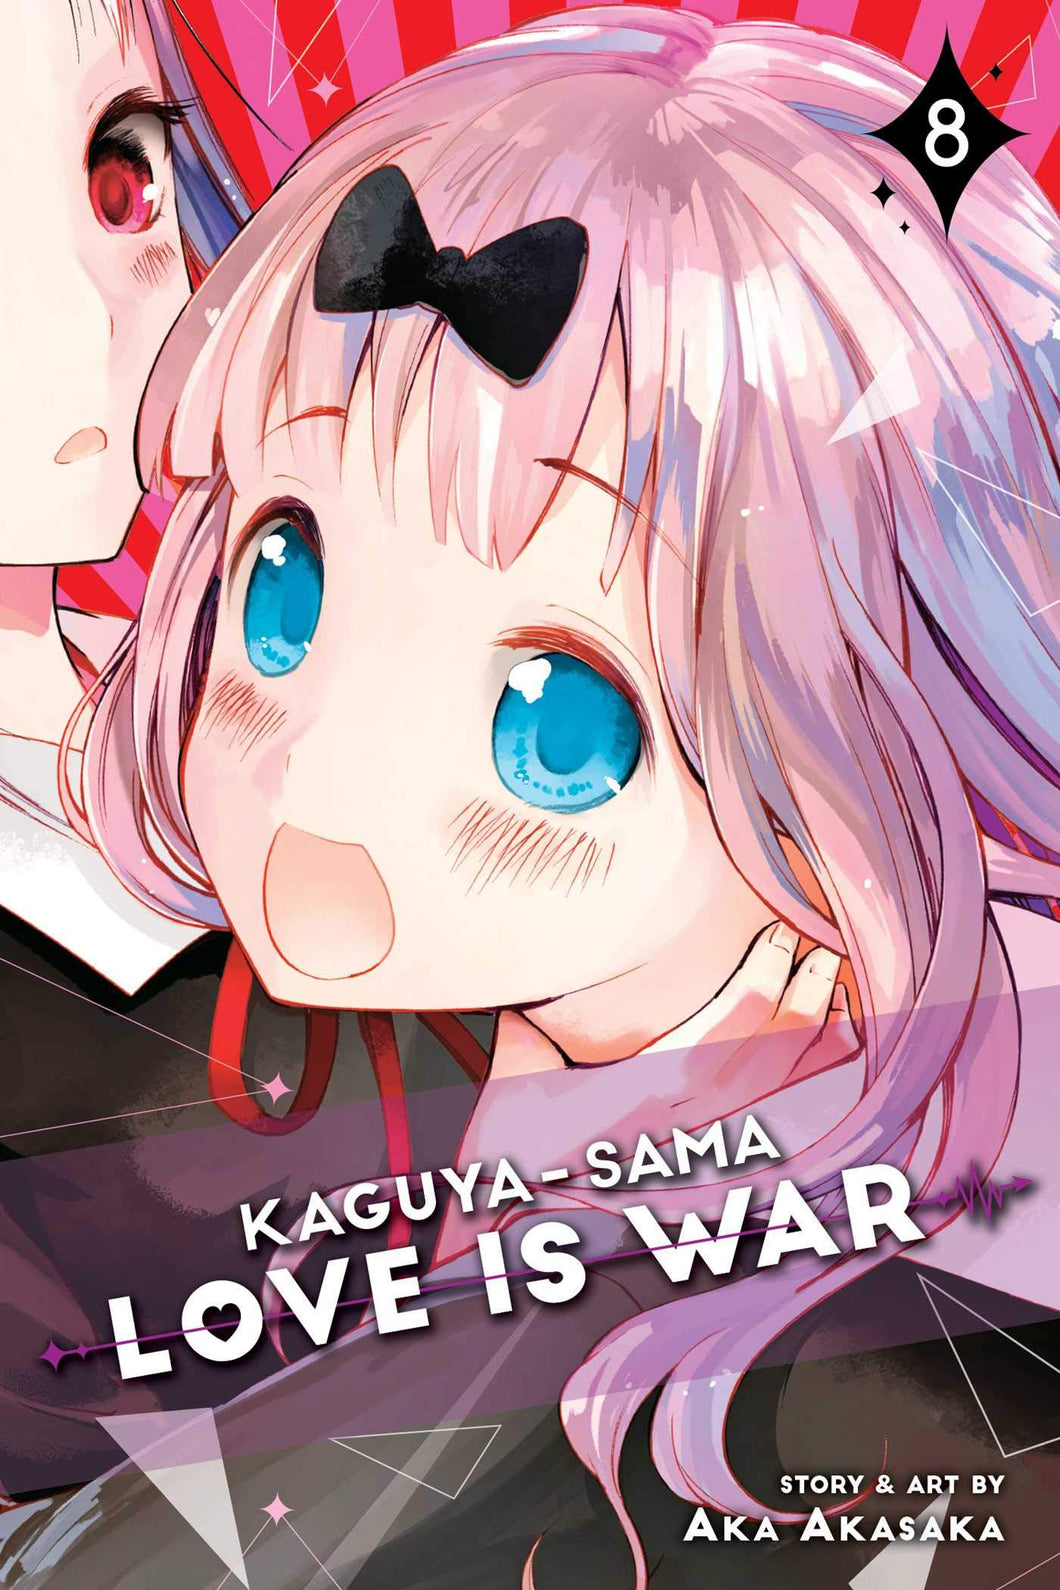 Kaguya-sama: Love Is War Volume 8